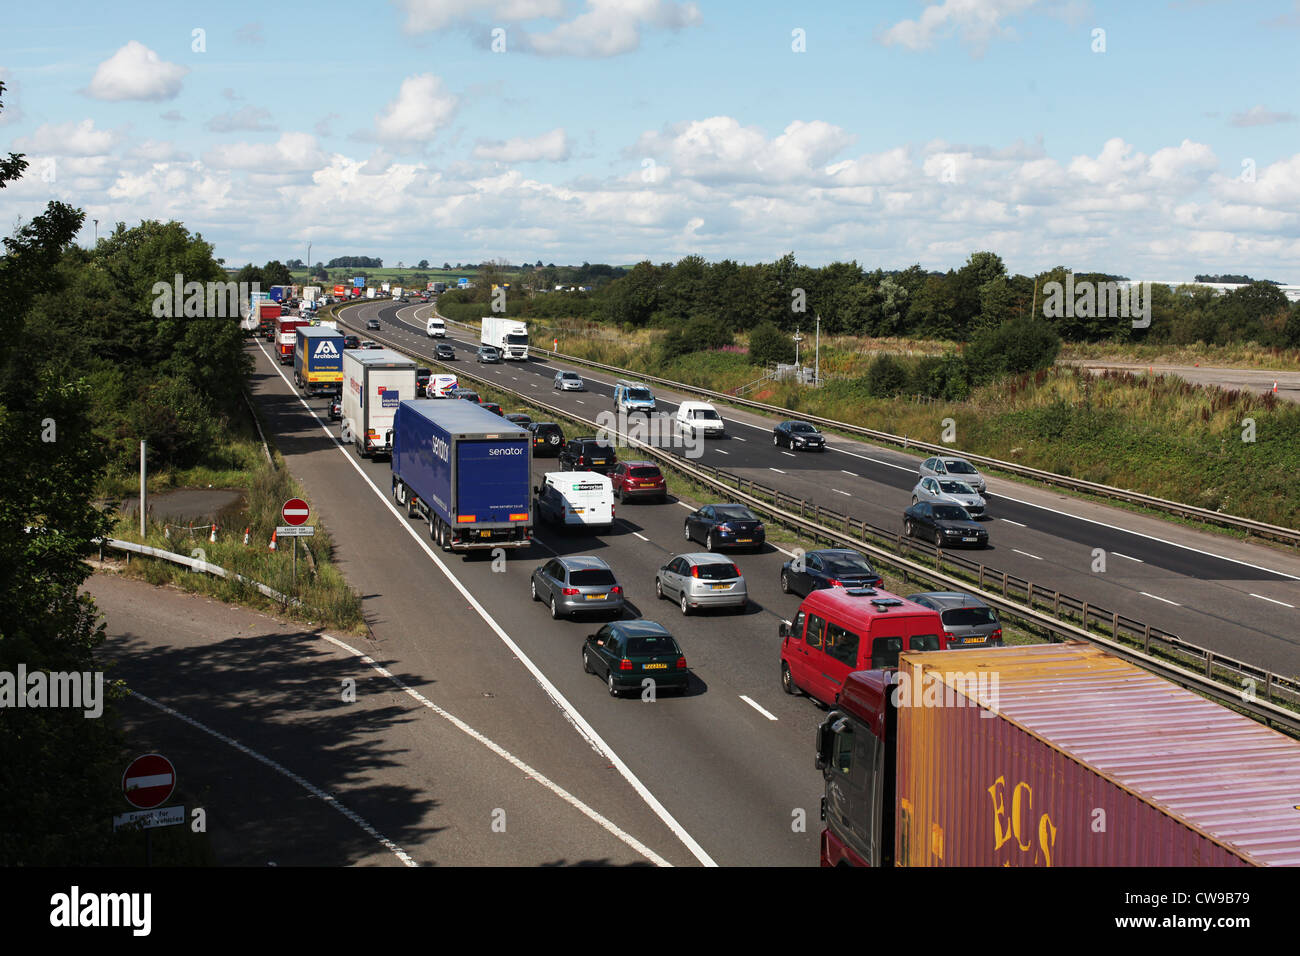 Les bouchons de circulation et une file d'attente de circulation sur l'autoroute M6 en Angleterre.le M6 jouxte la route à péage M6 et contribue à la congestion et confitures Banque D'Images